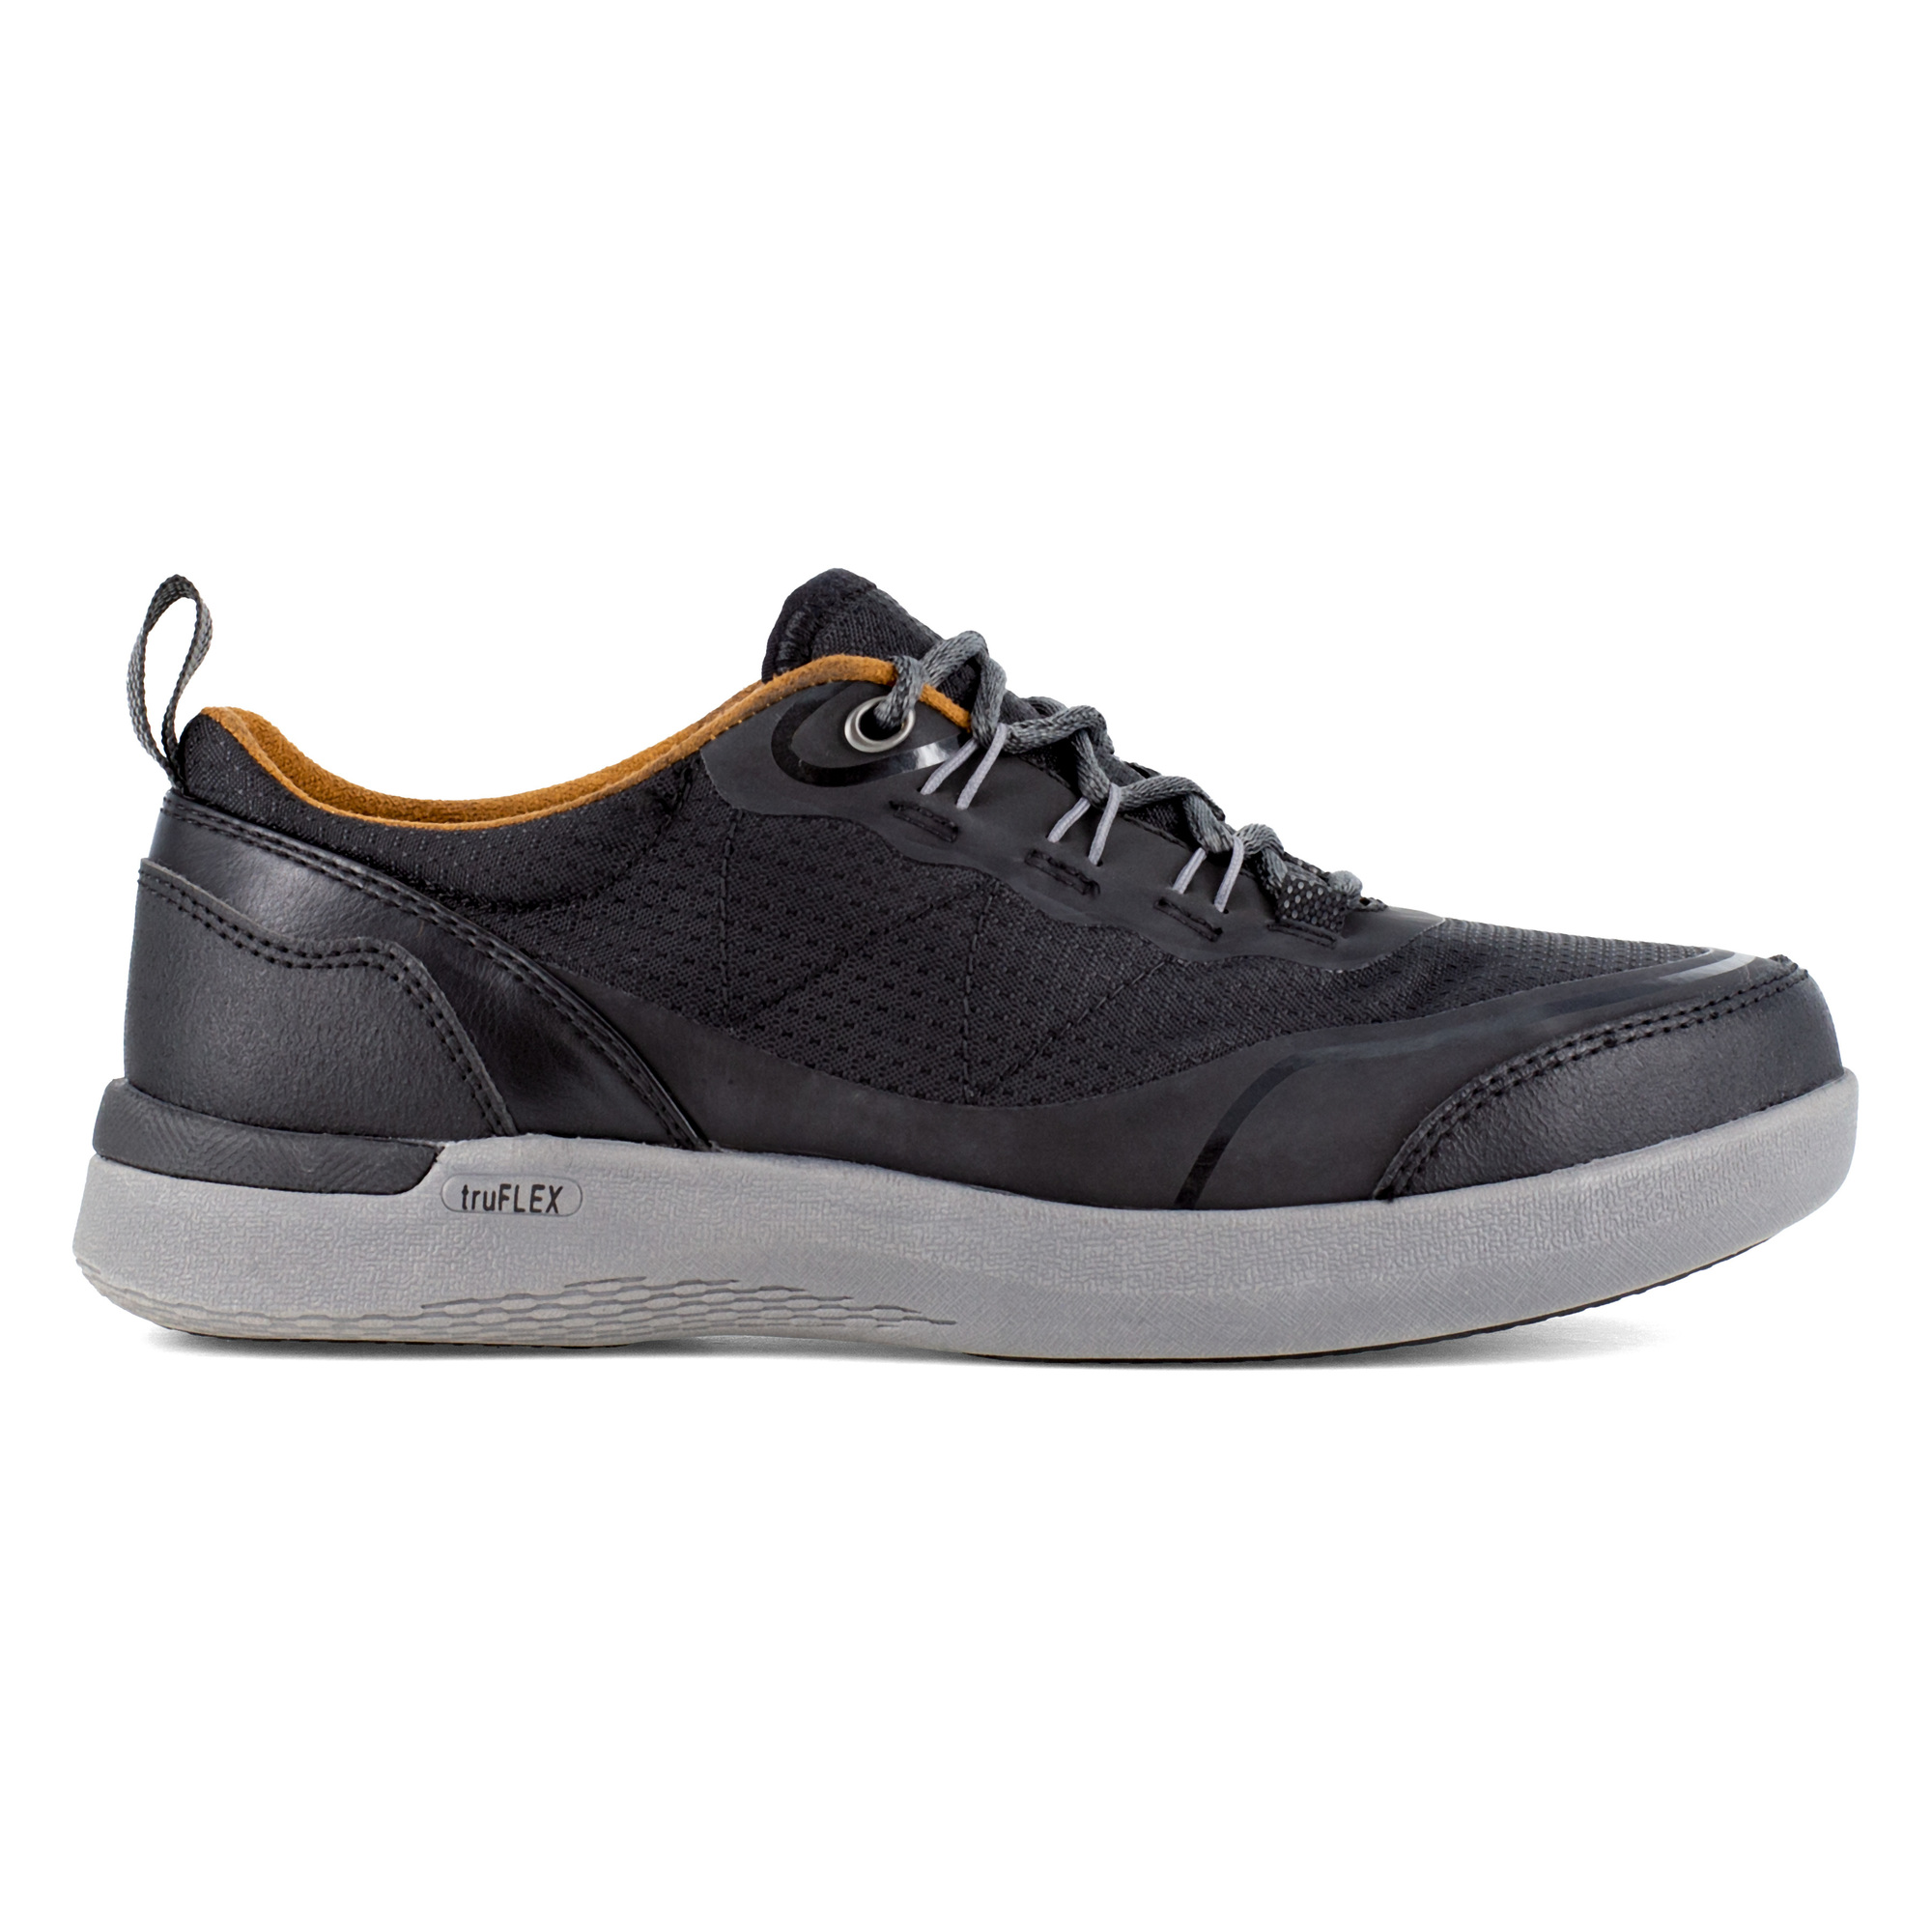 Rockport Works, Work Sneaker, Size 9, Width Medium, Color Black, Model RK687